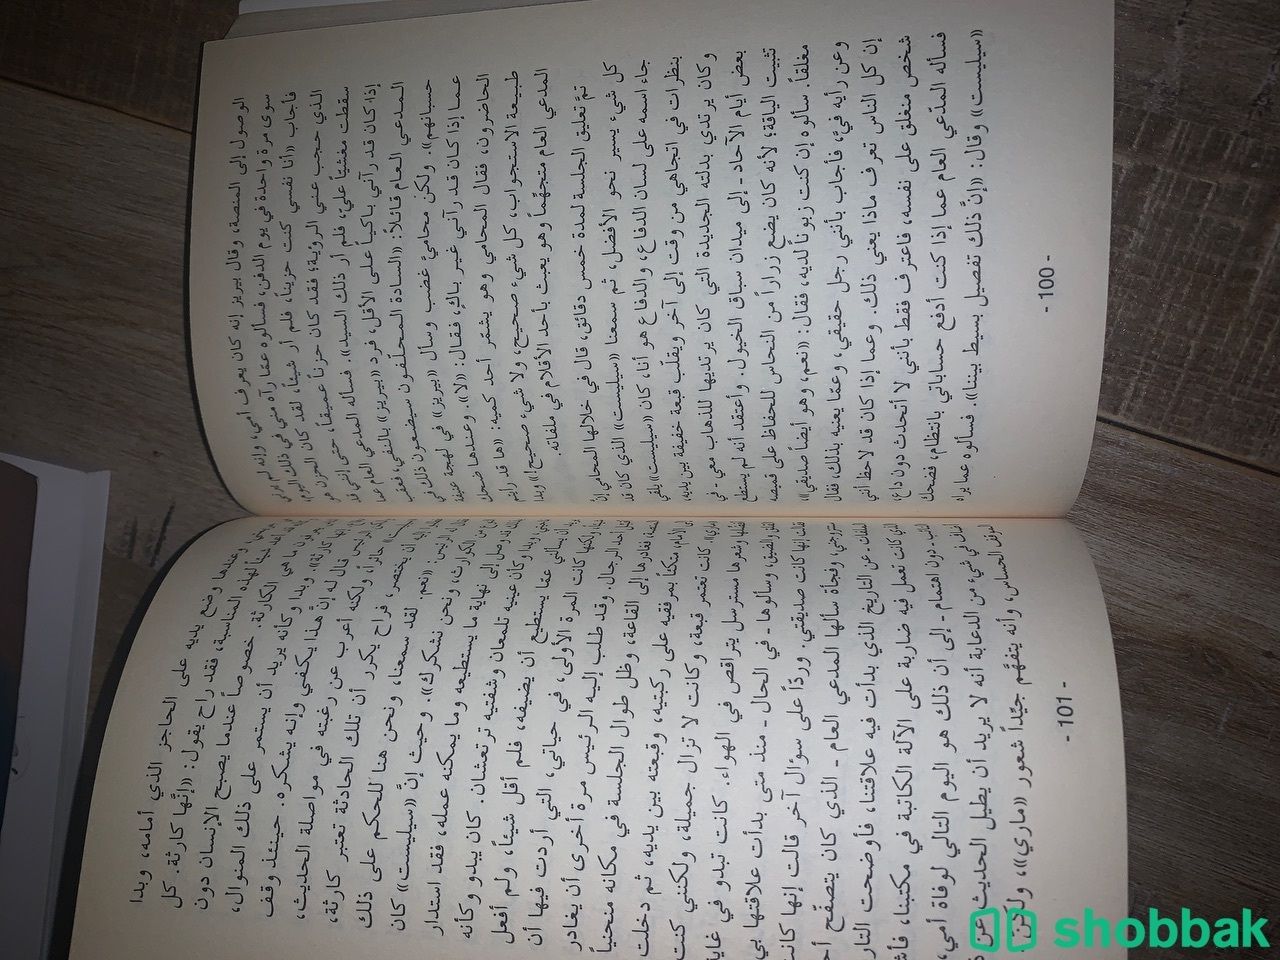 كتاب الغريب - ألبير كامو  Shobbak Saudi Arabia